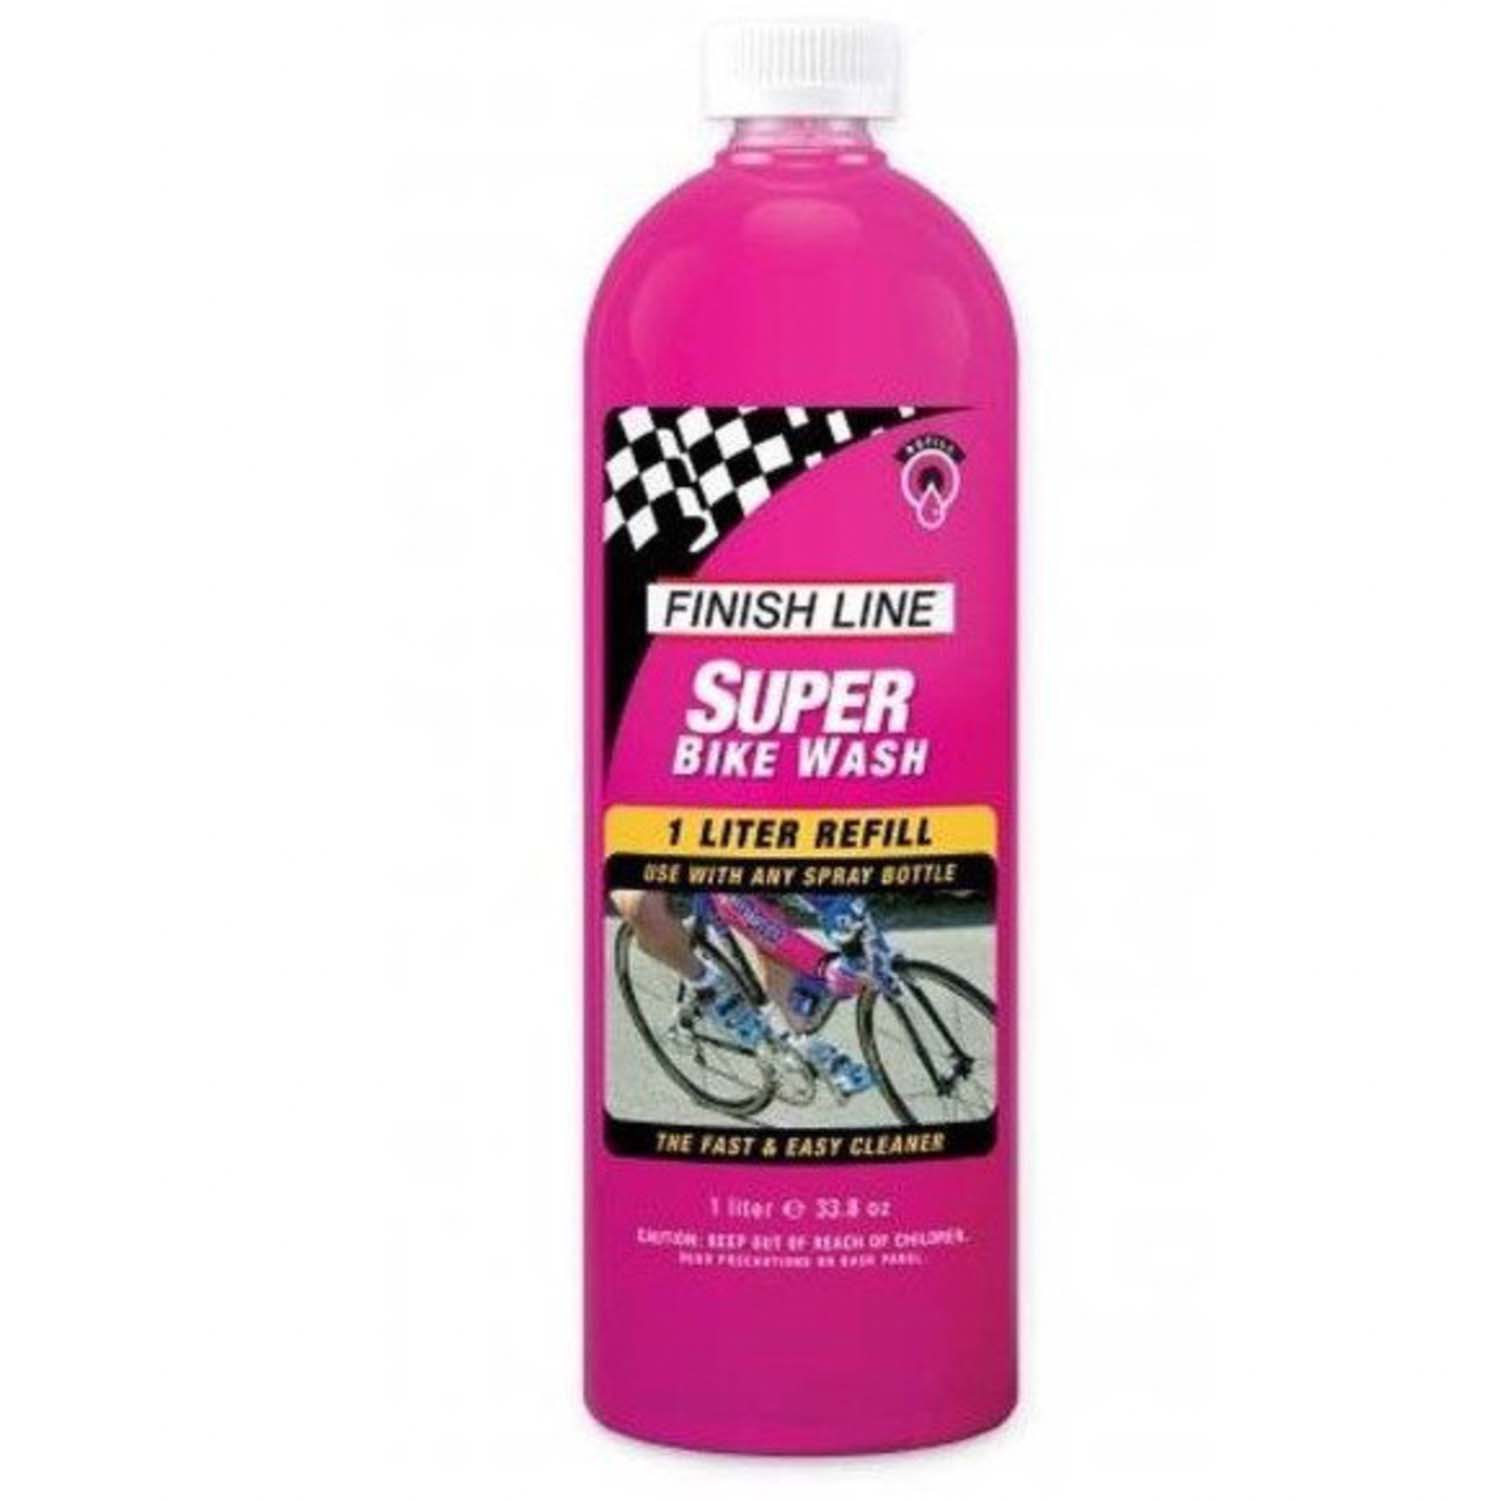 Super bike wash 1L, shampoing pour vélo